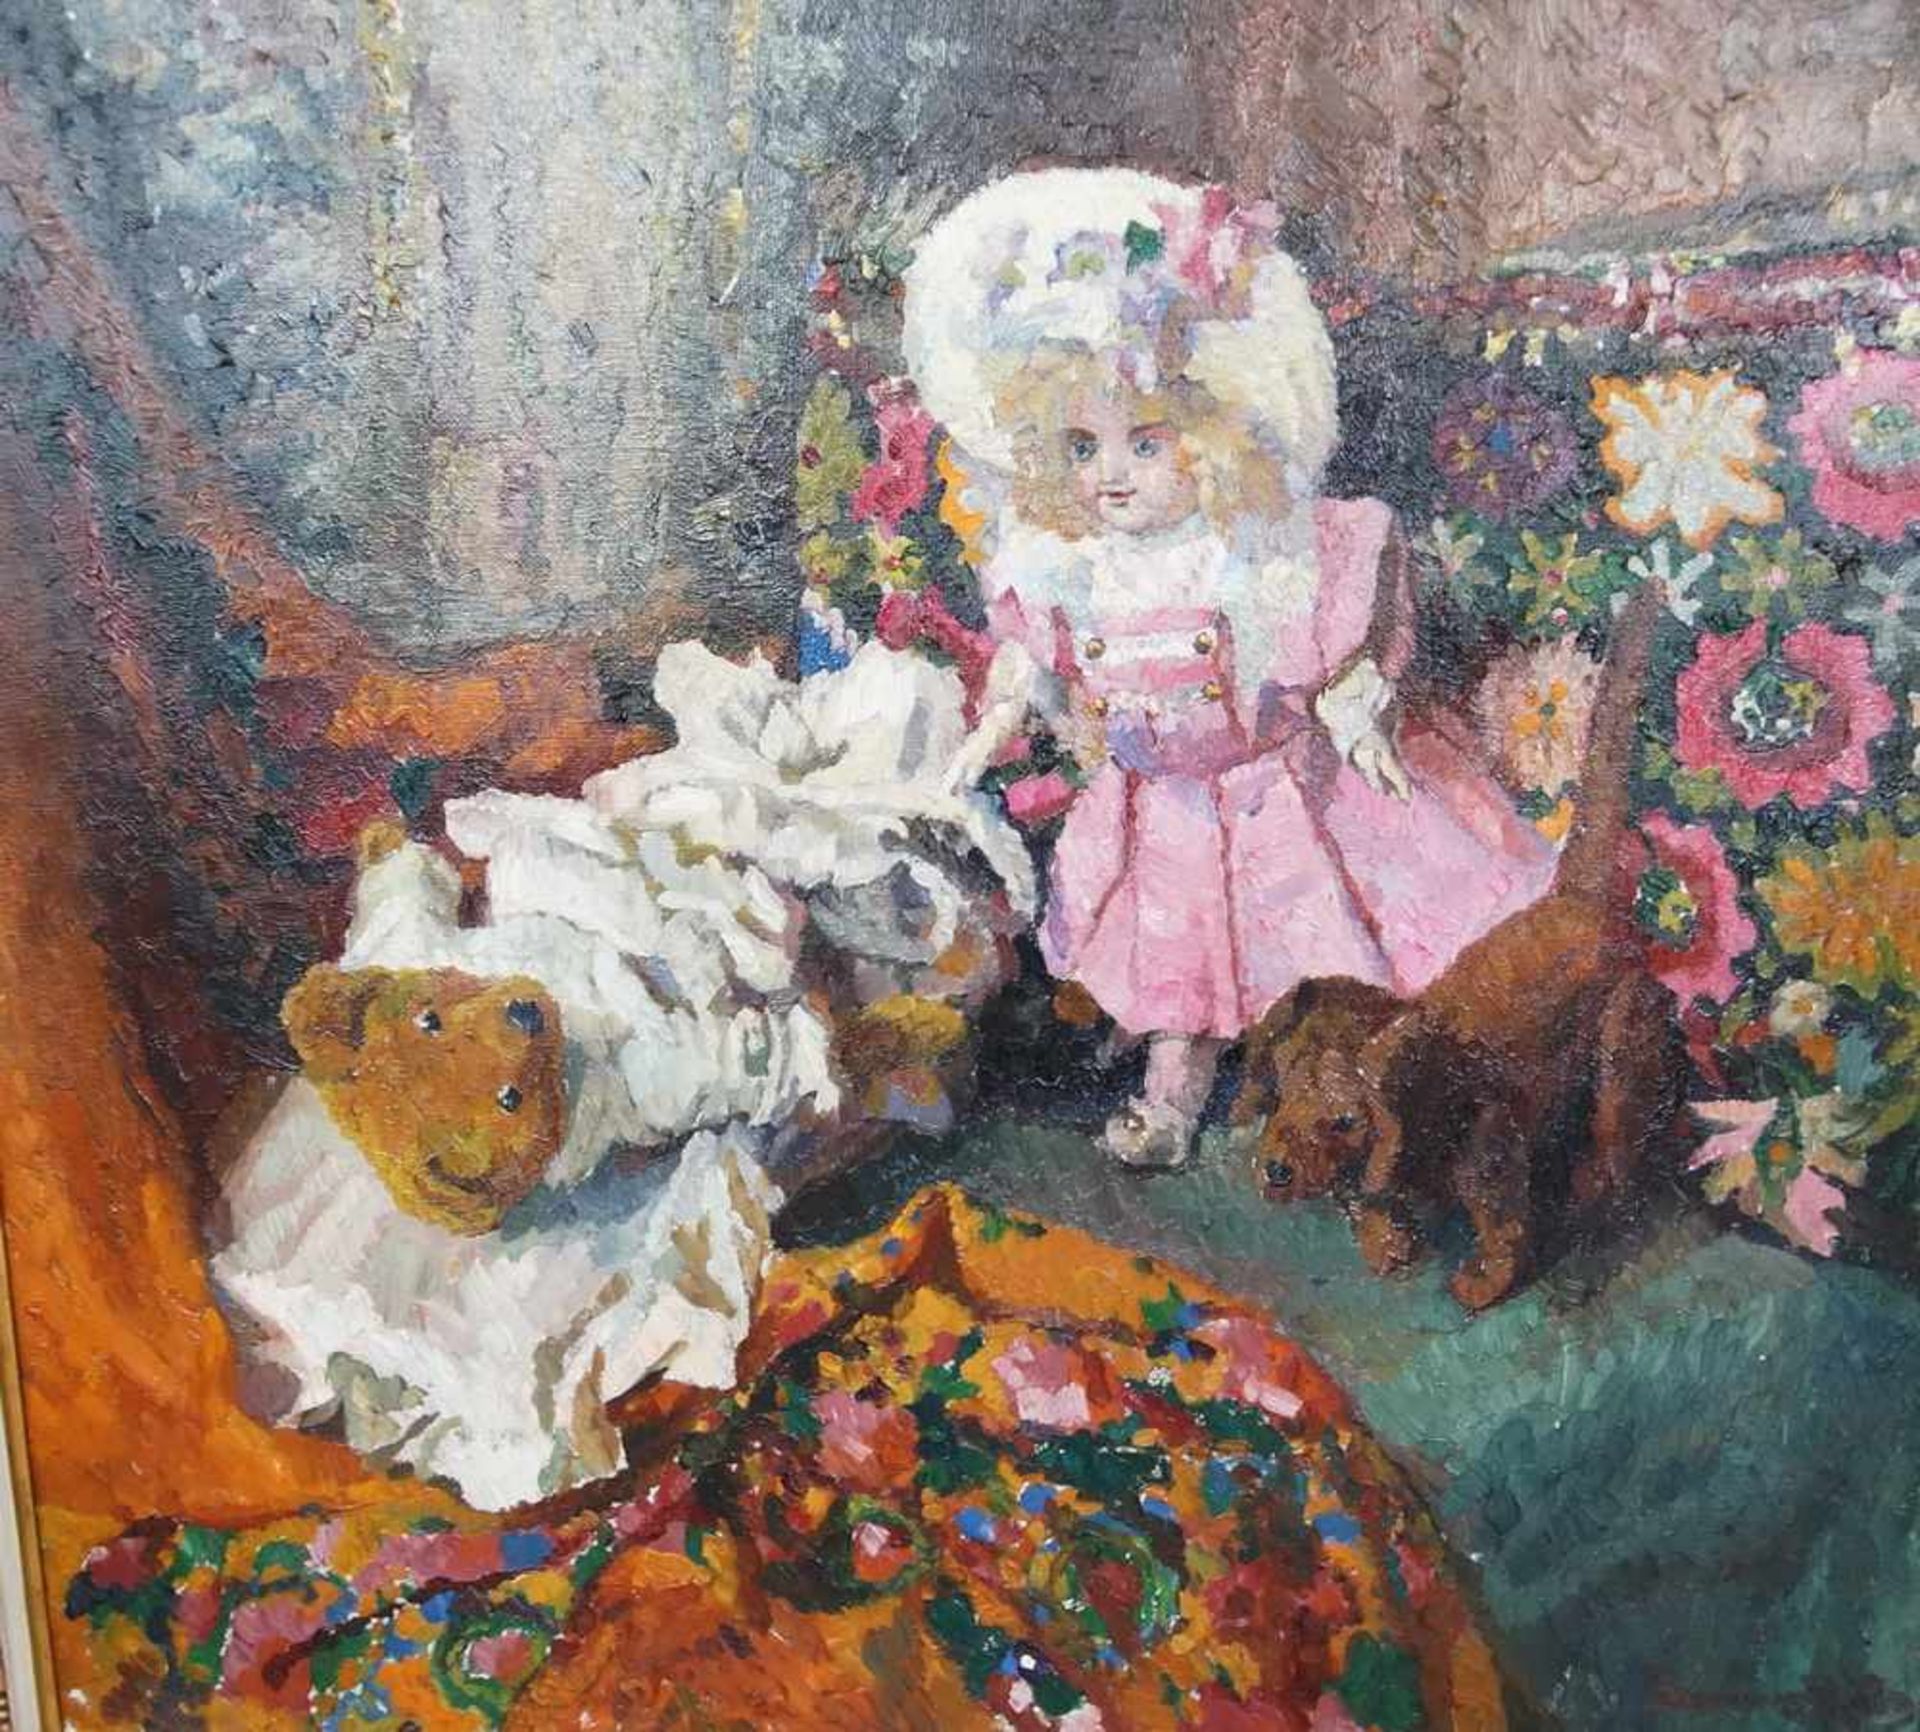 Liebliches Gemälde in Öl auf Leinwand, gerahmt, Kind mit Teddybär und Hund, 103x111cm - Bild 5 aus 6